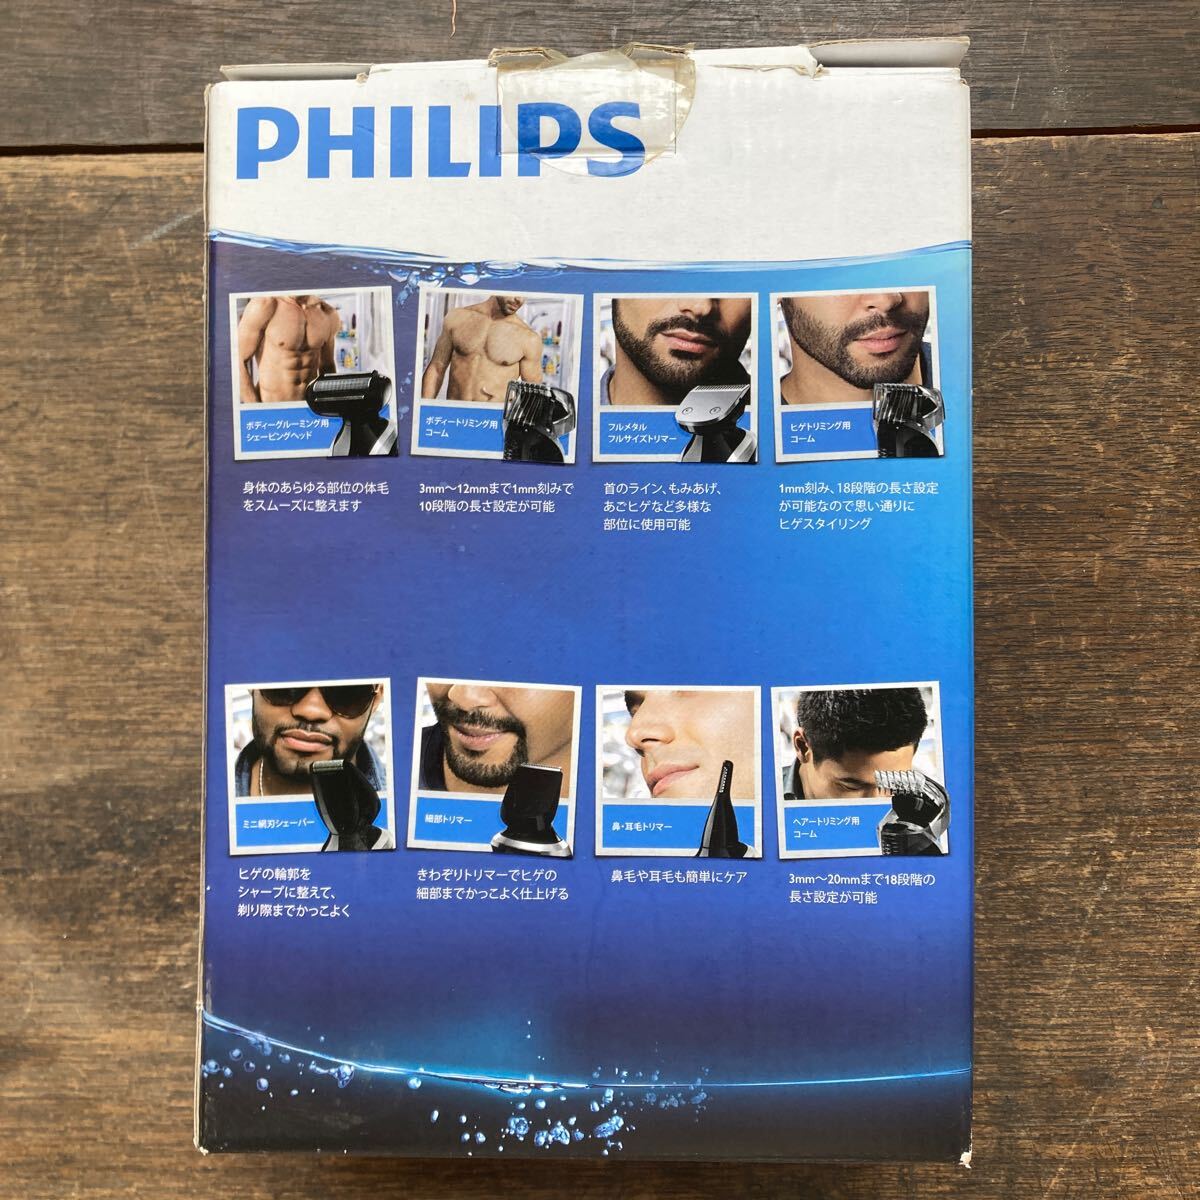 PHILIPS Philips QG3380 мульти- груминг комплект Multigroom Pro заряжающийся волосы машинка для стрижки волосы - резчик волосы - машинка для стрижки бритва 